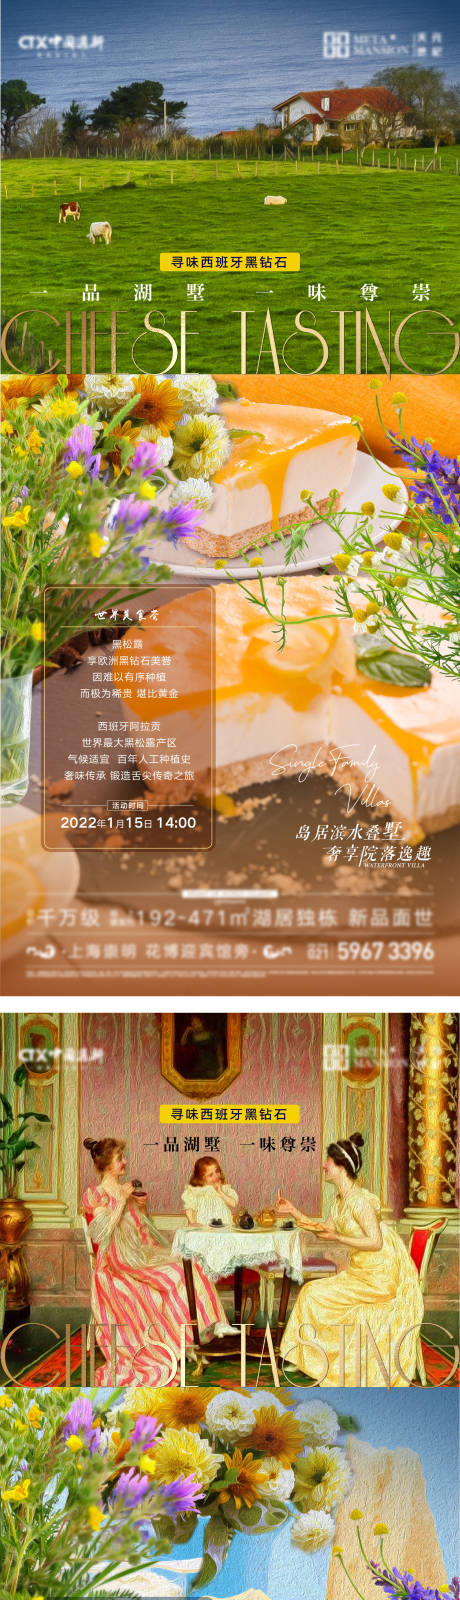 地产奶酪美食品鉴活动海报